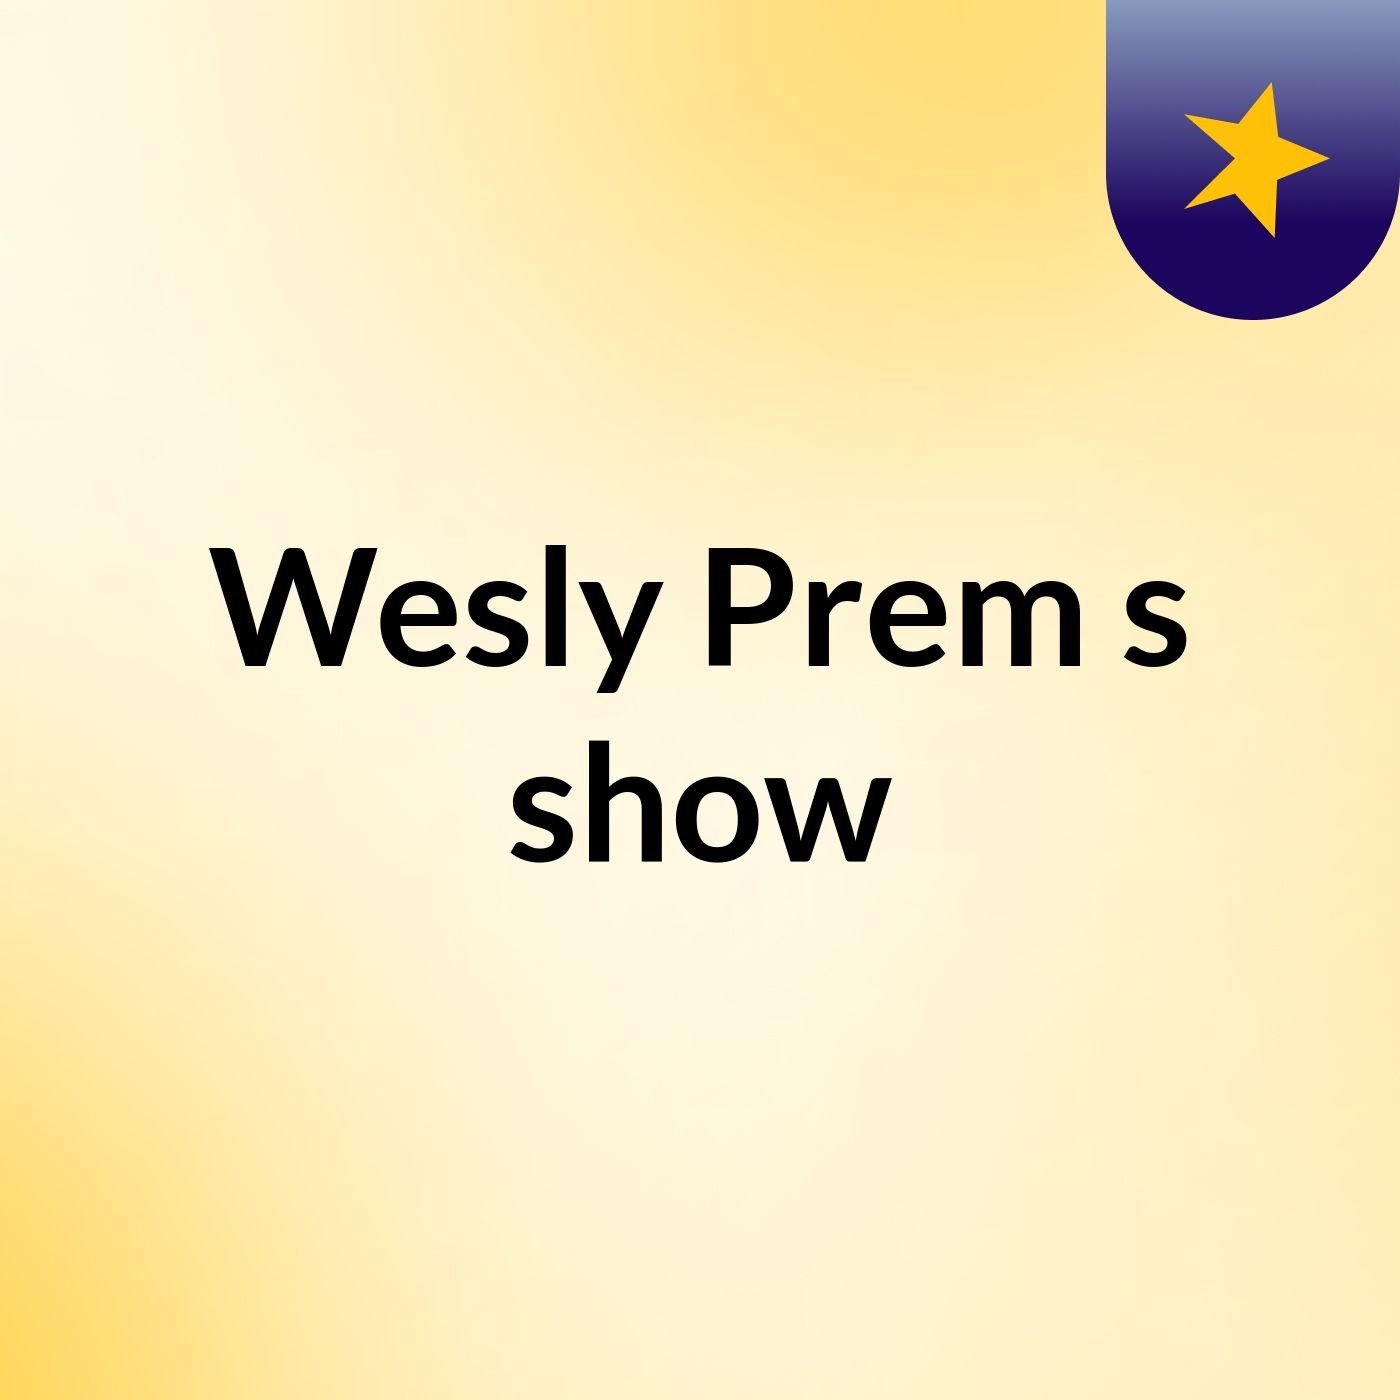 Wesly Prem's show